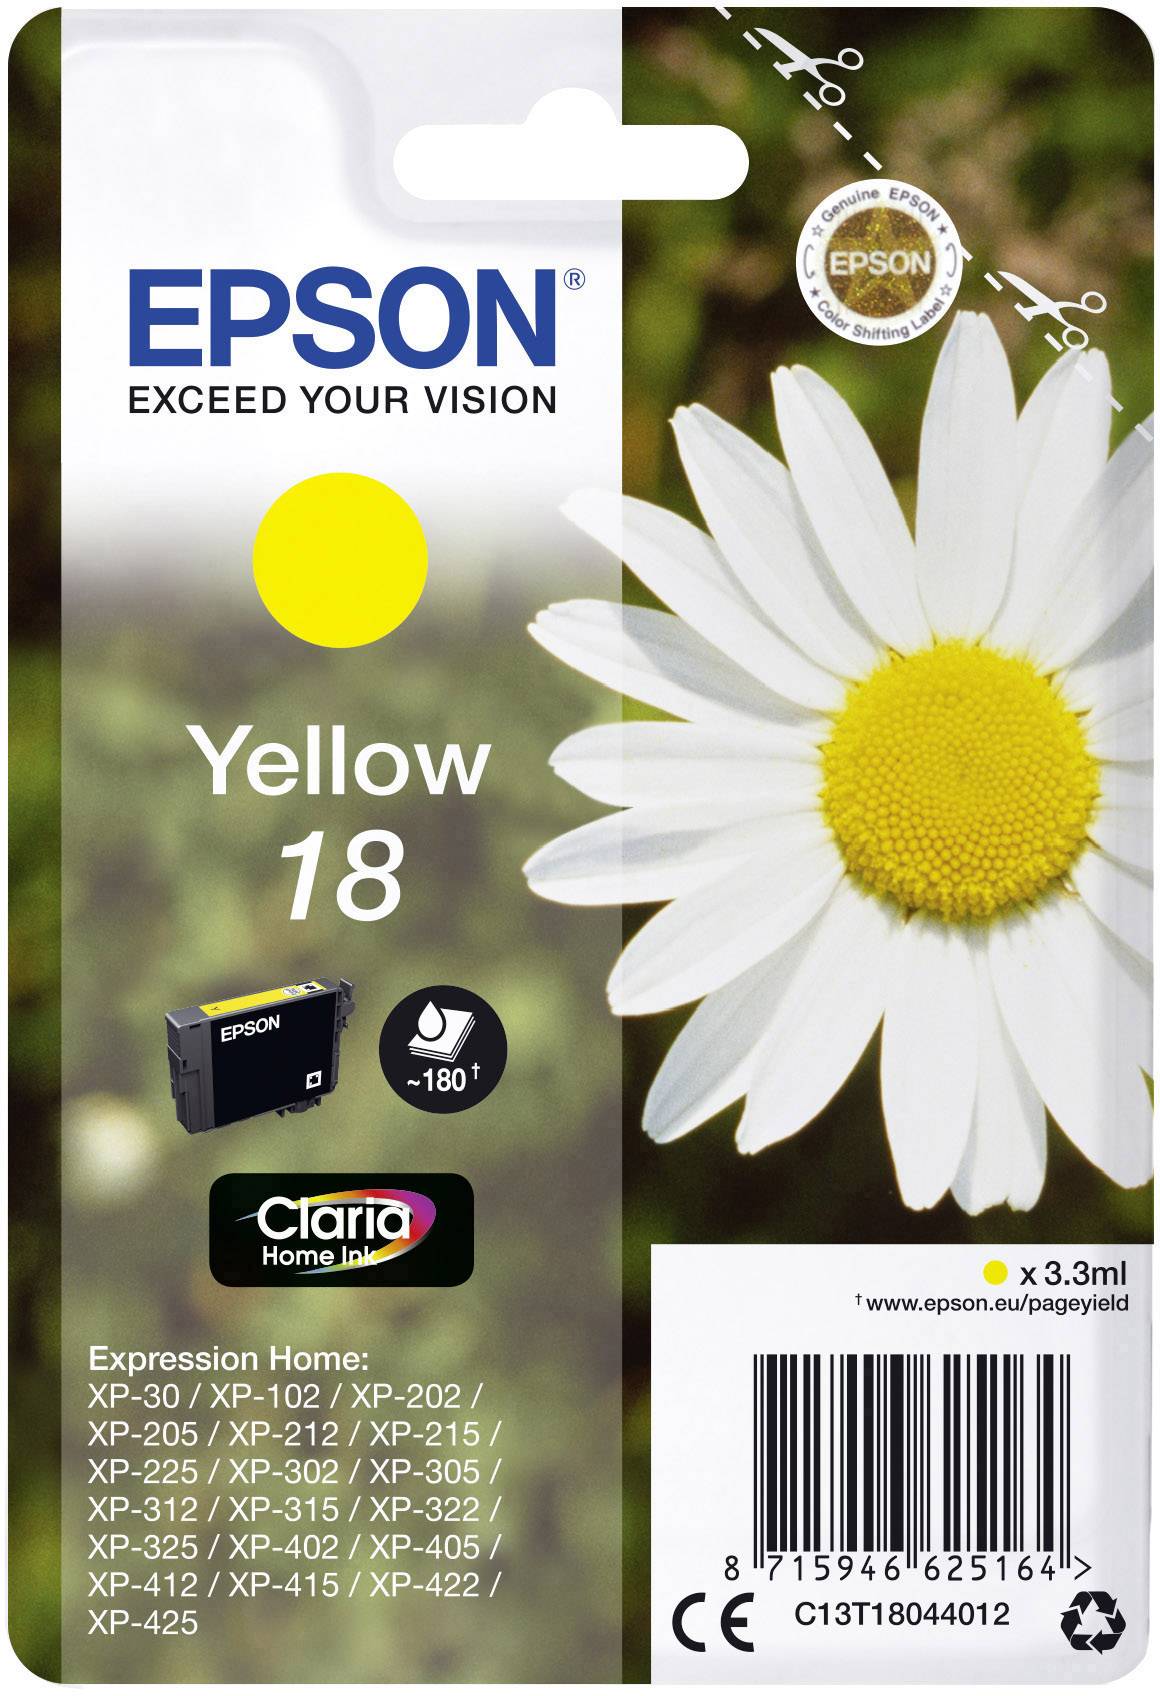 Installer Imprimante Epson 7925 Xp-315 / Telecharger ...